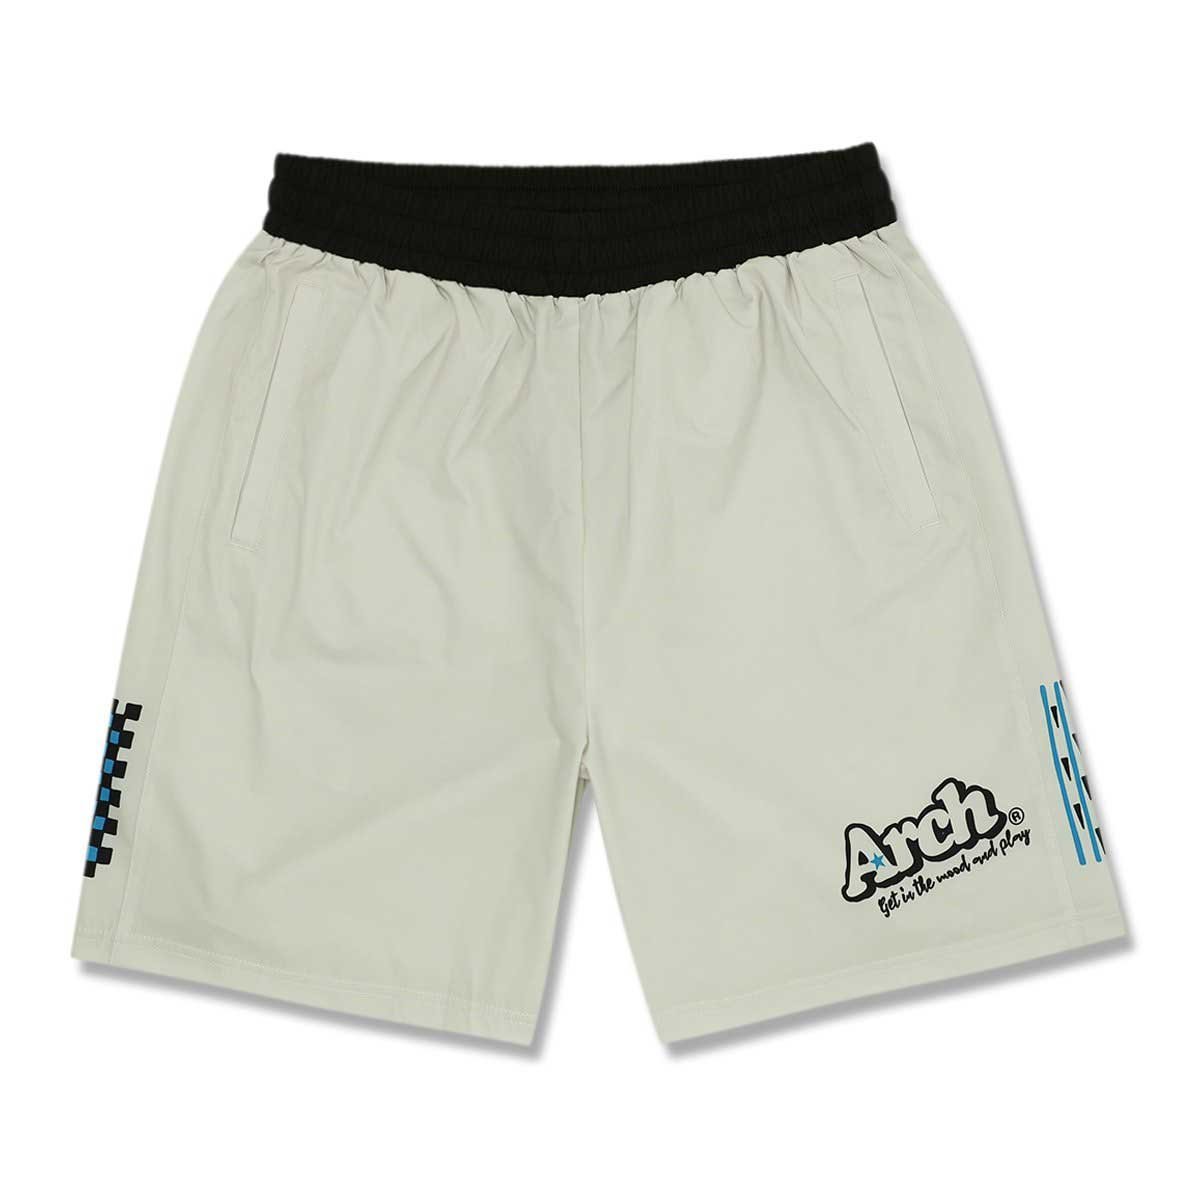 1559798-Arch/バスケットパンツ ショートパンツ Arch rough designed shorts/L